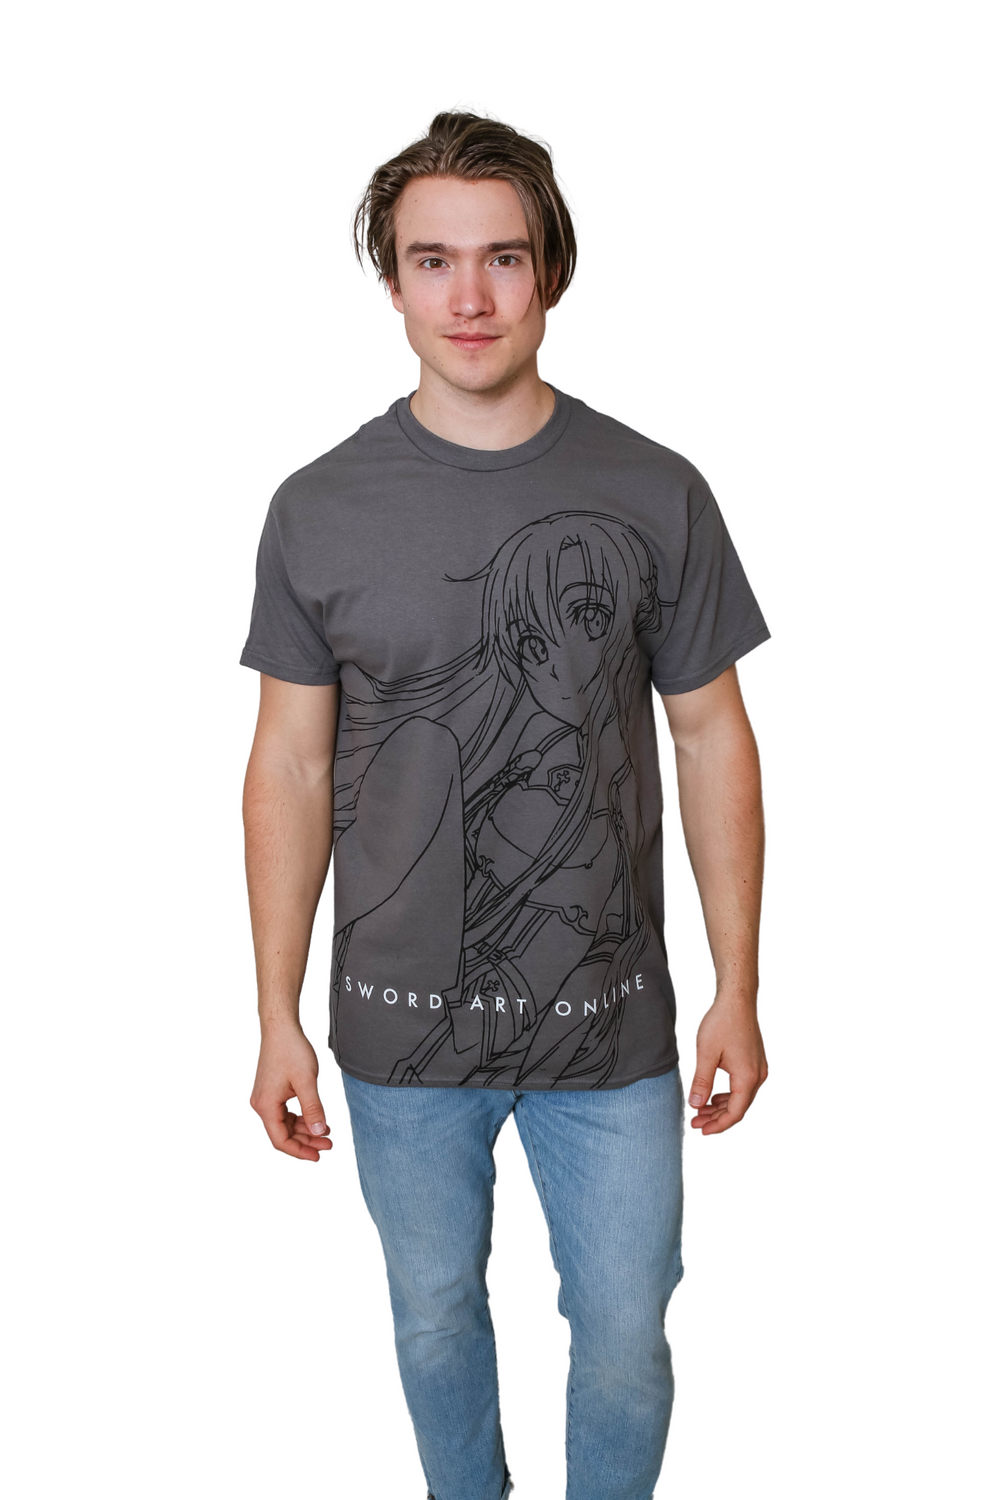 Sword Art Online - Asuna Sitting Line Art Adult T-Shirt